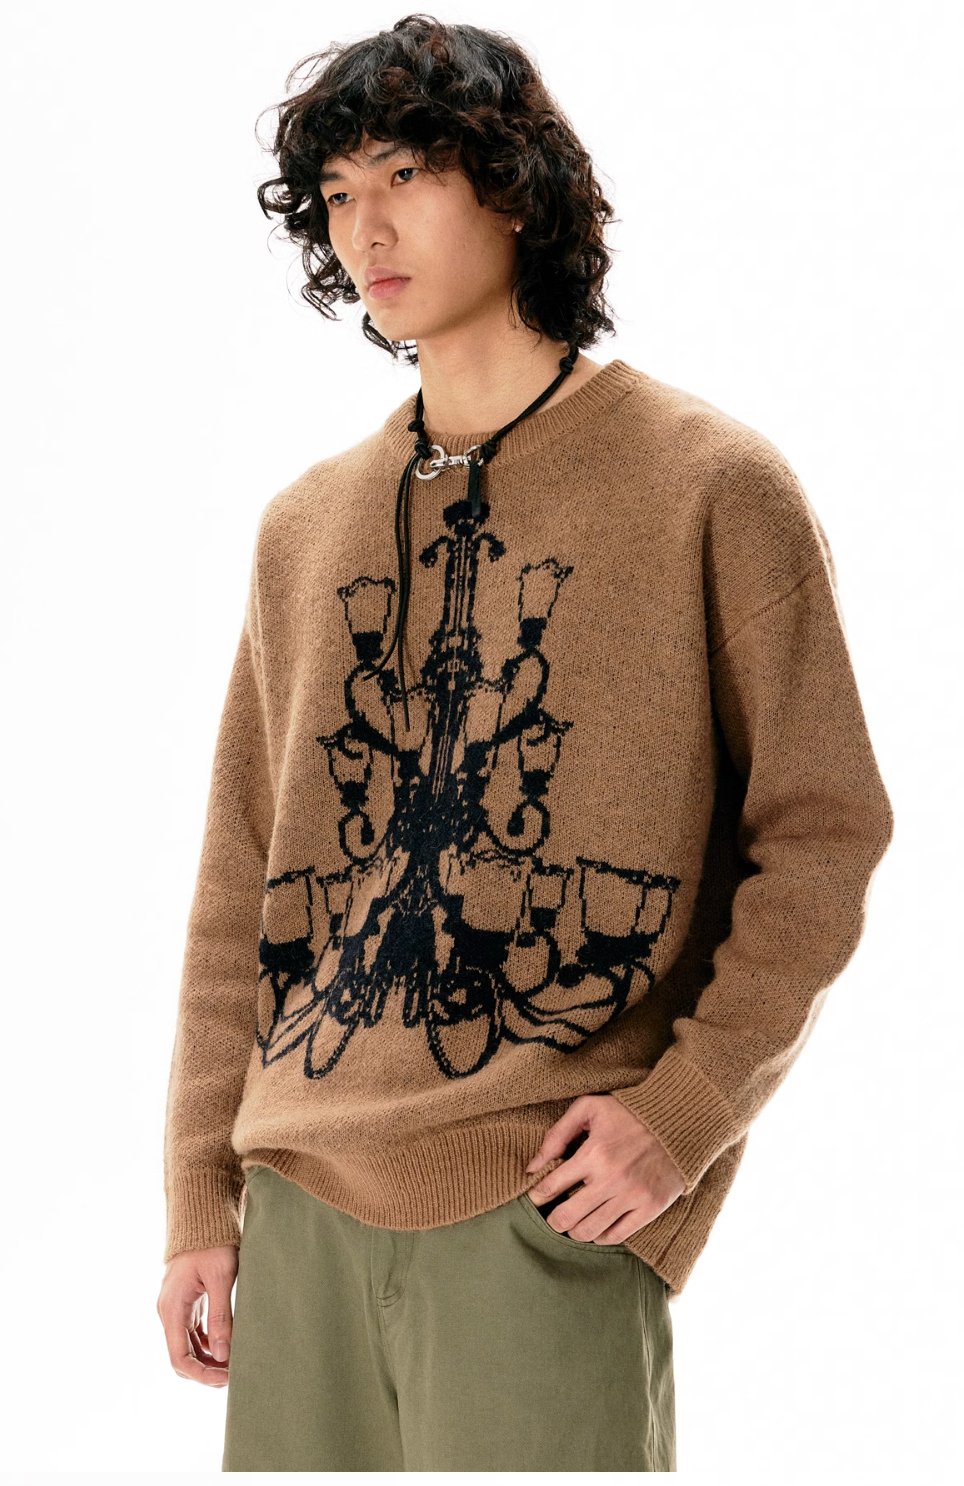 chandelier knit sweater APR0003